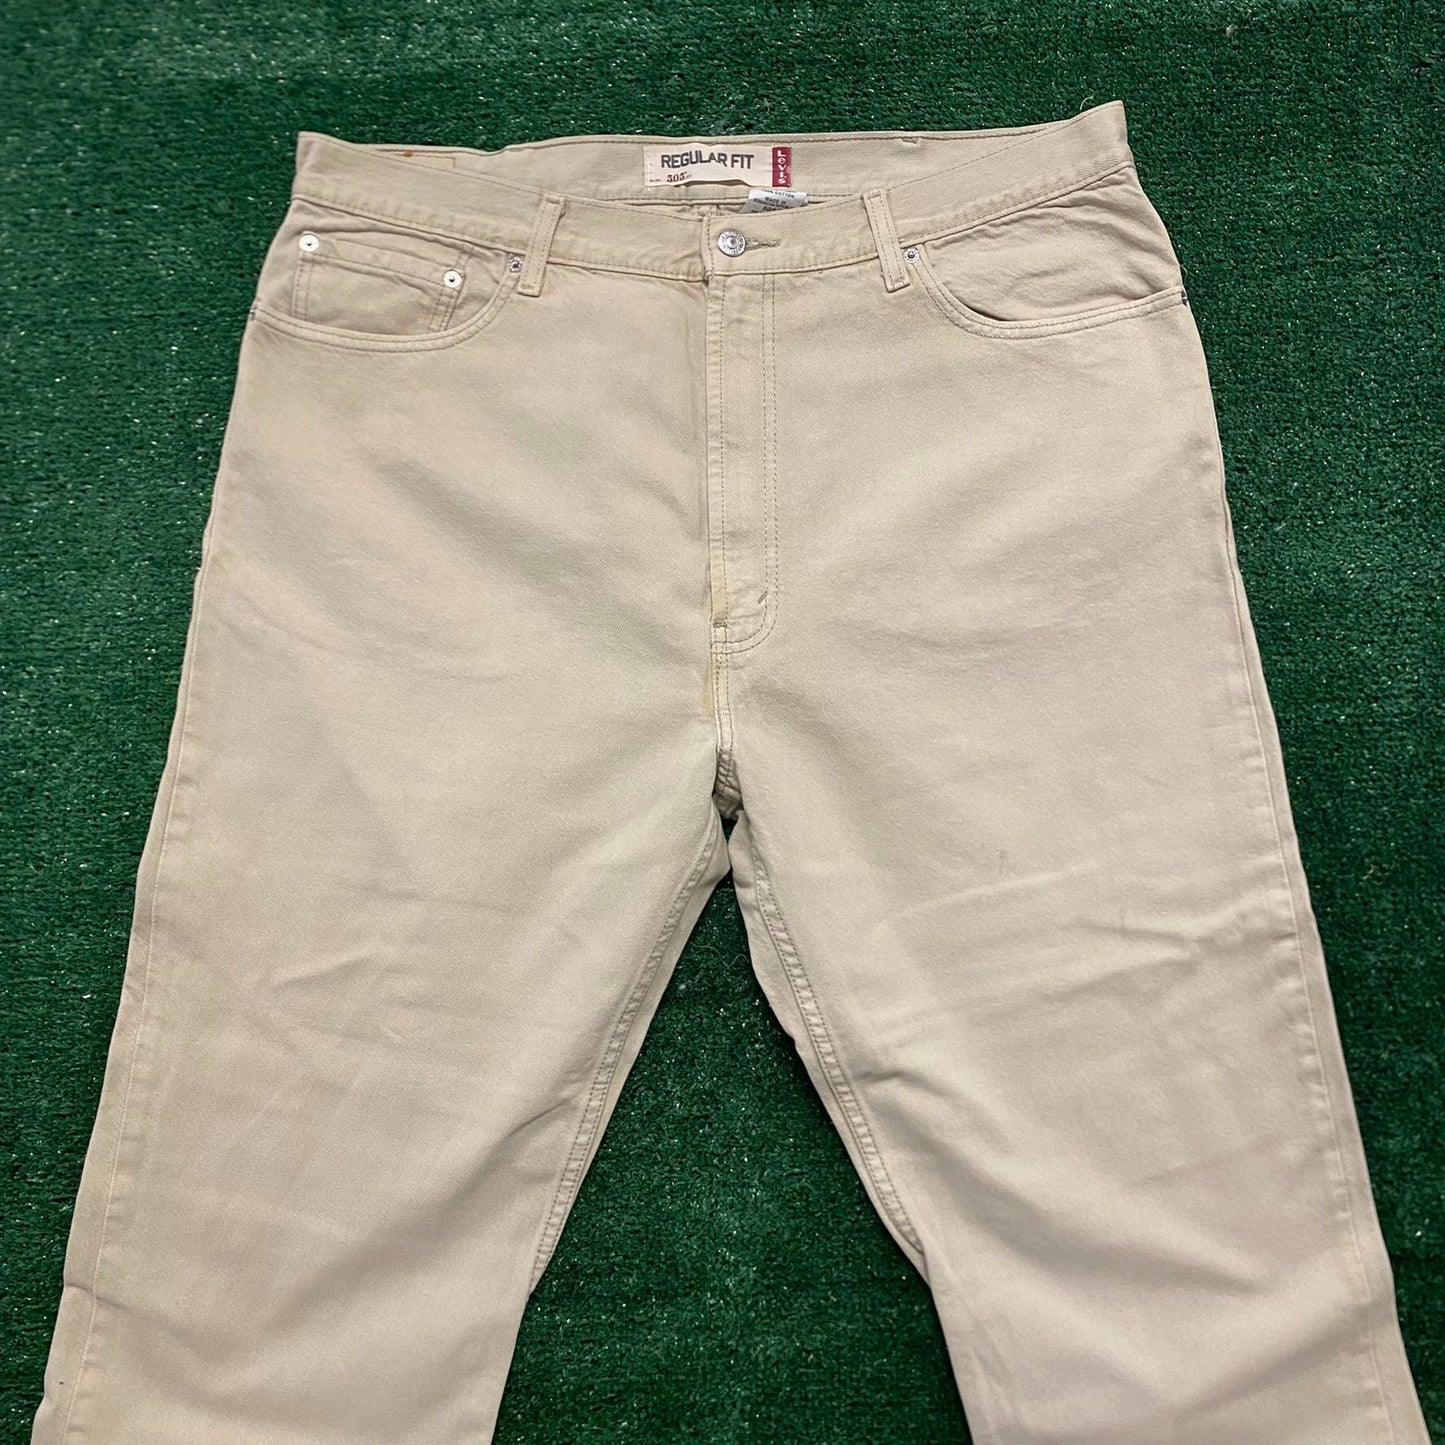 Levi's 505 Straight Fit Beige Vintage Denim Jeans Pants